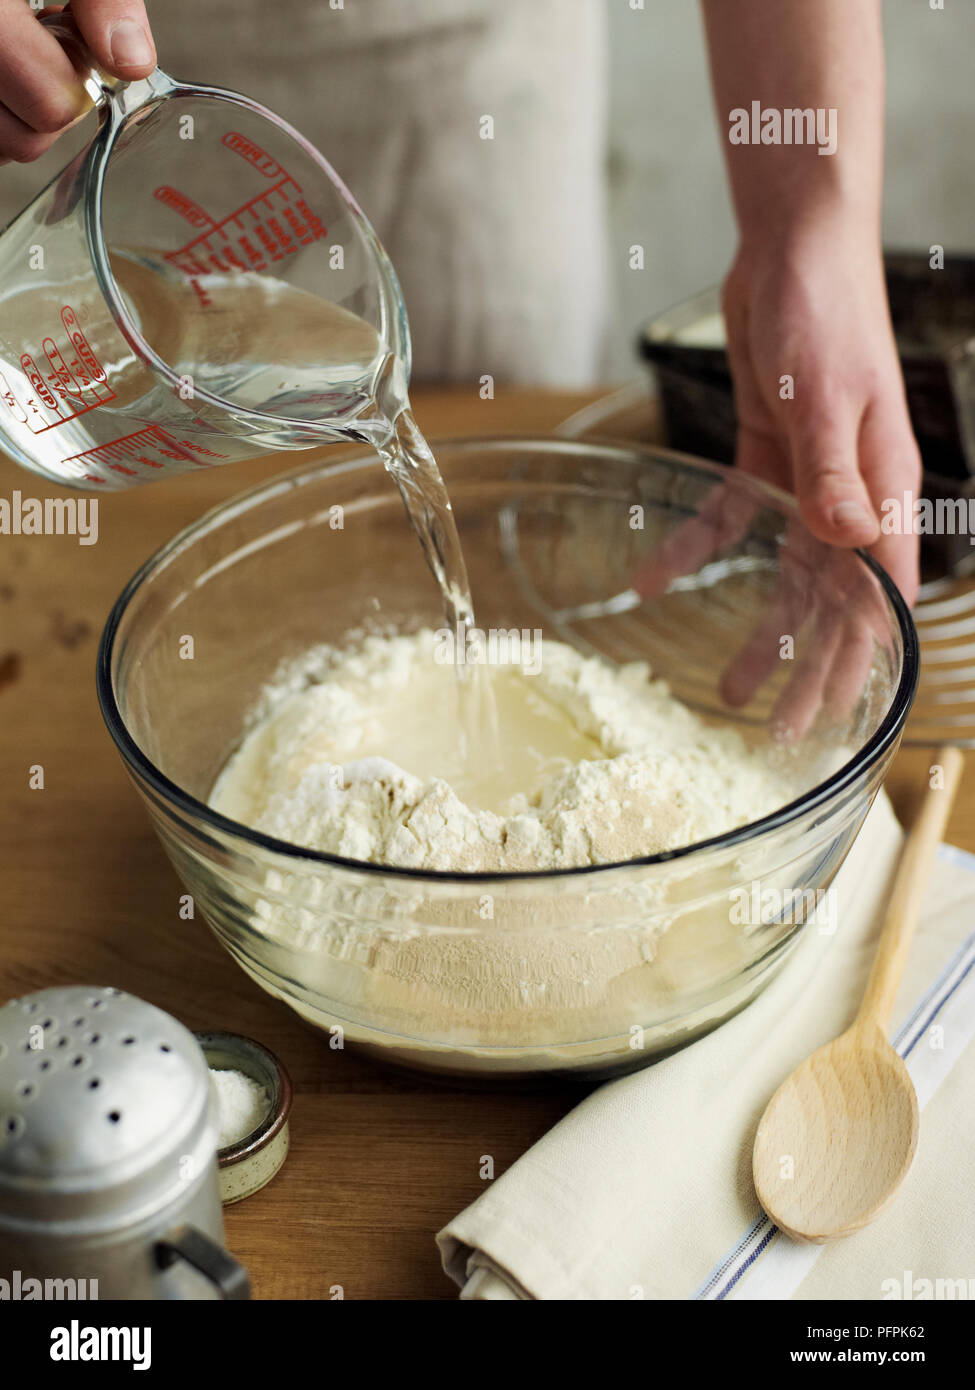 Verser de l'eau à partir de la verseuse de la mélanger avec les autres ingrédients dans un bol (fabrication du pain) Banque D'Images